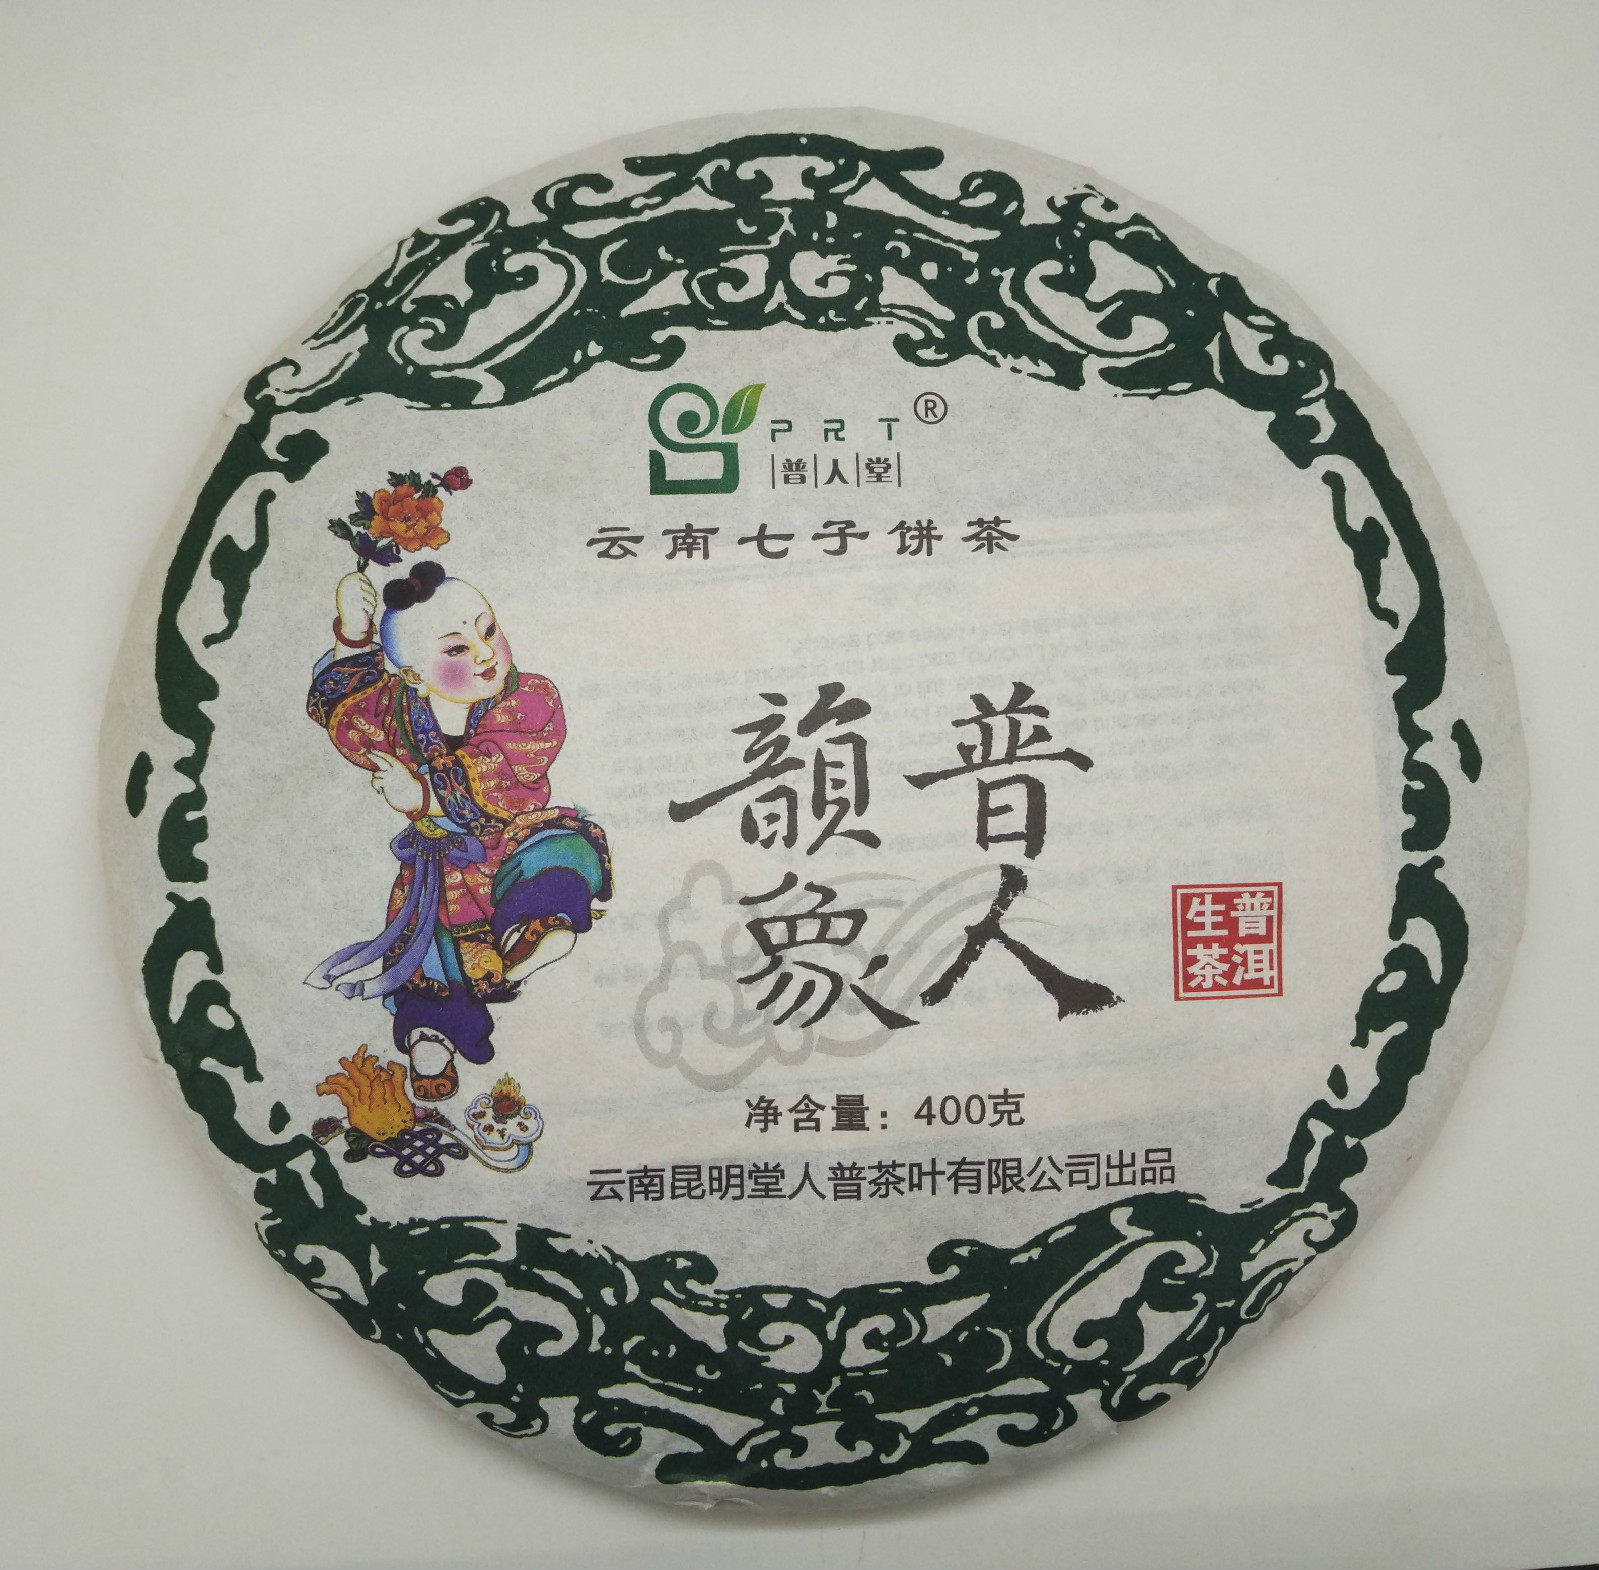 深圳市陈先生订购的普人堂茶品已发出